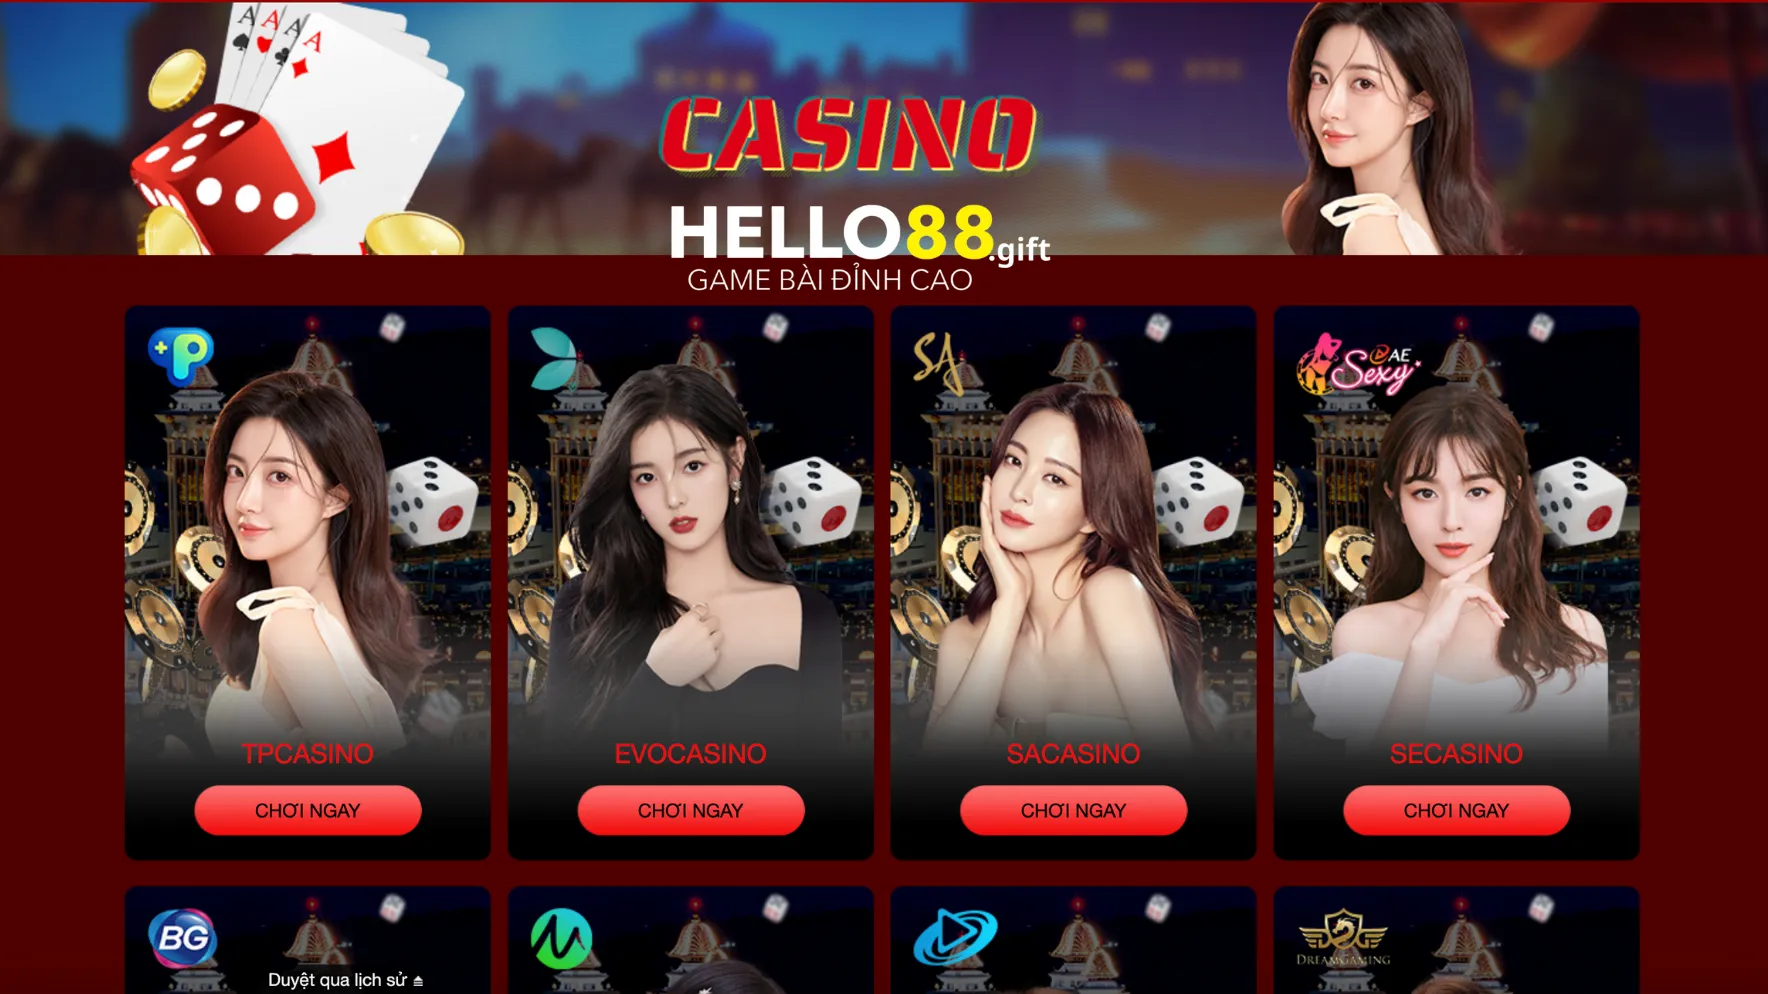 Casino Hello88, sòng bạc trực tuyến uy tín nhất hiện nay